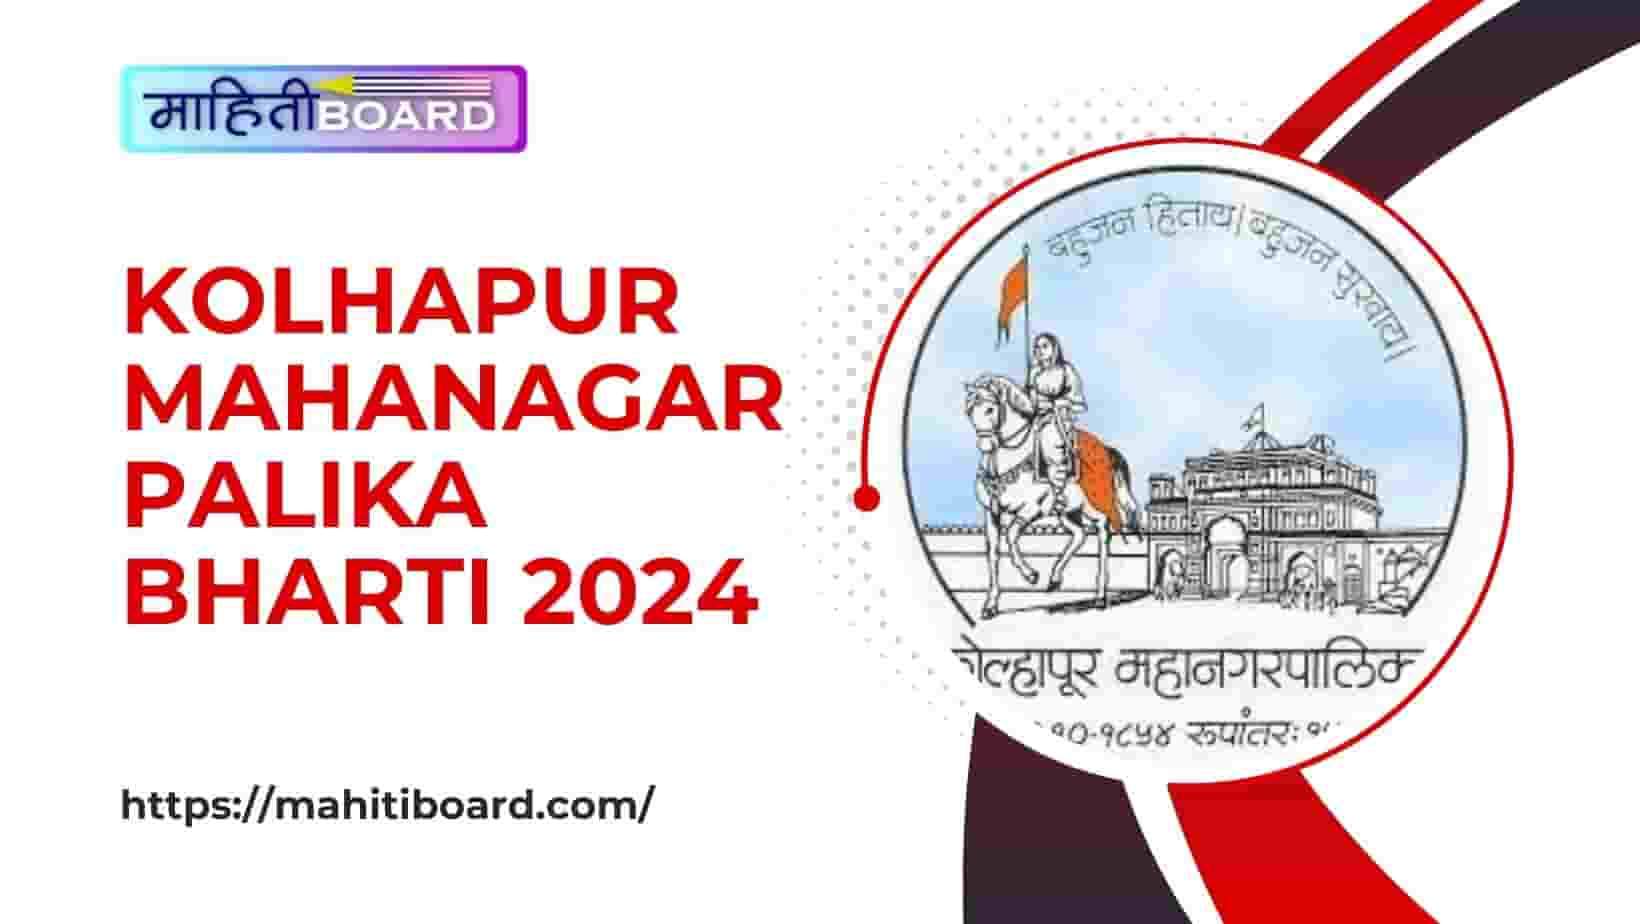 Kolhapur Mahanagarpalika Bharti 2024